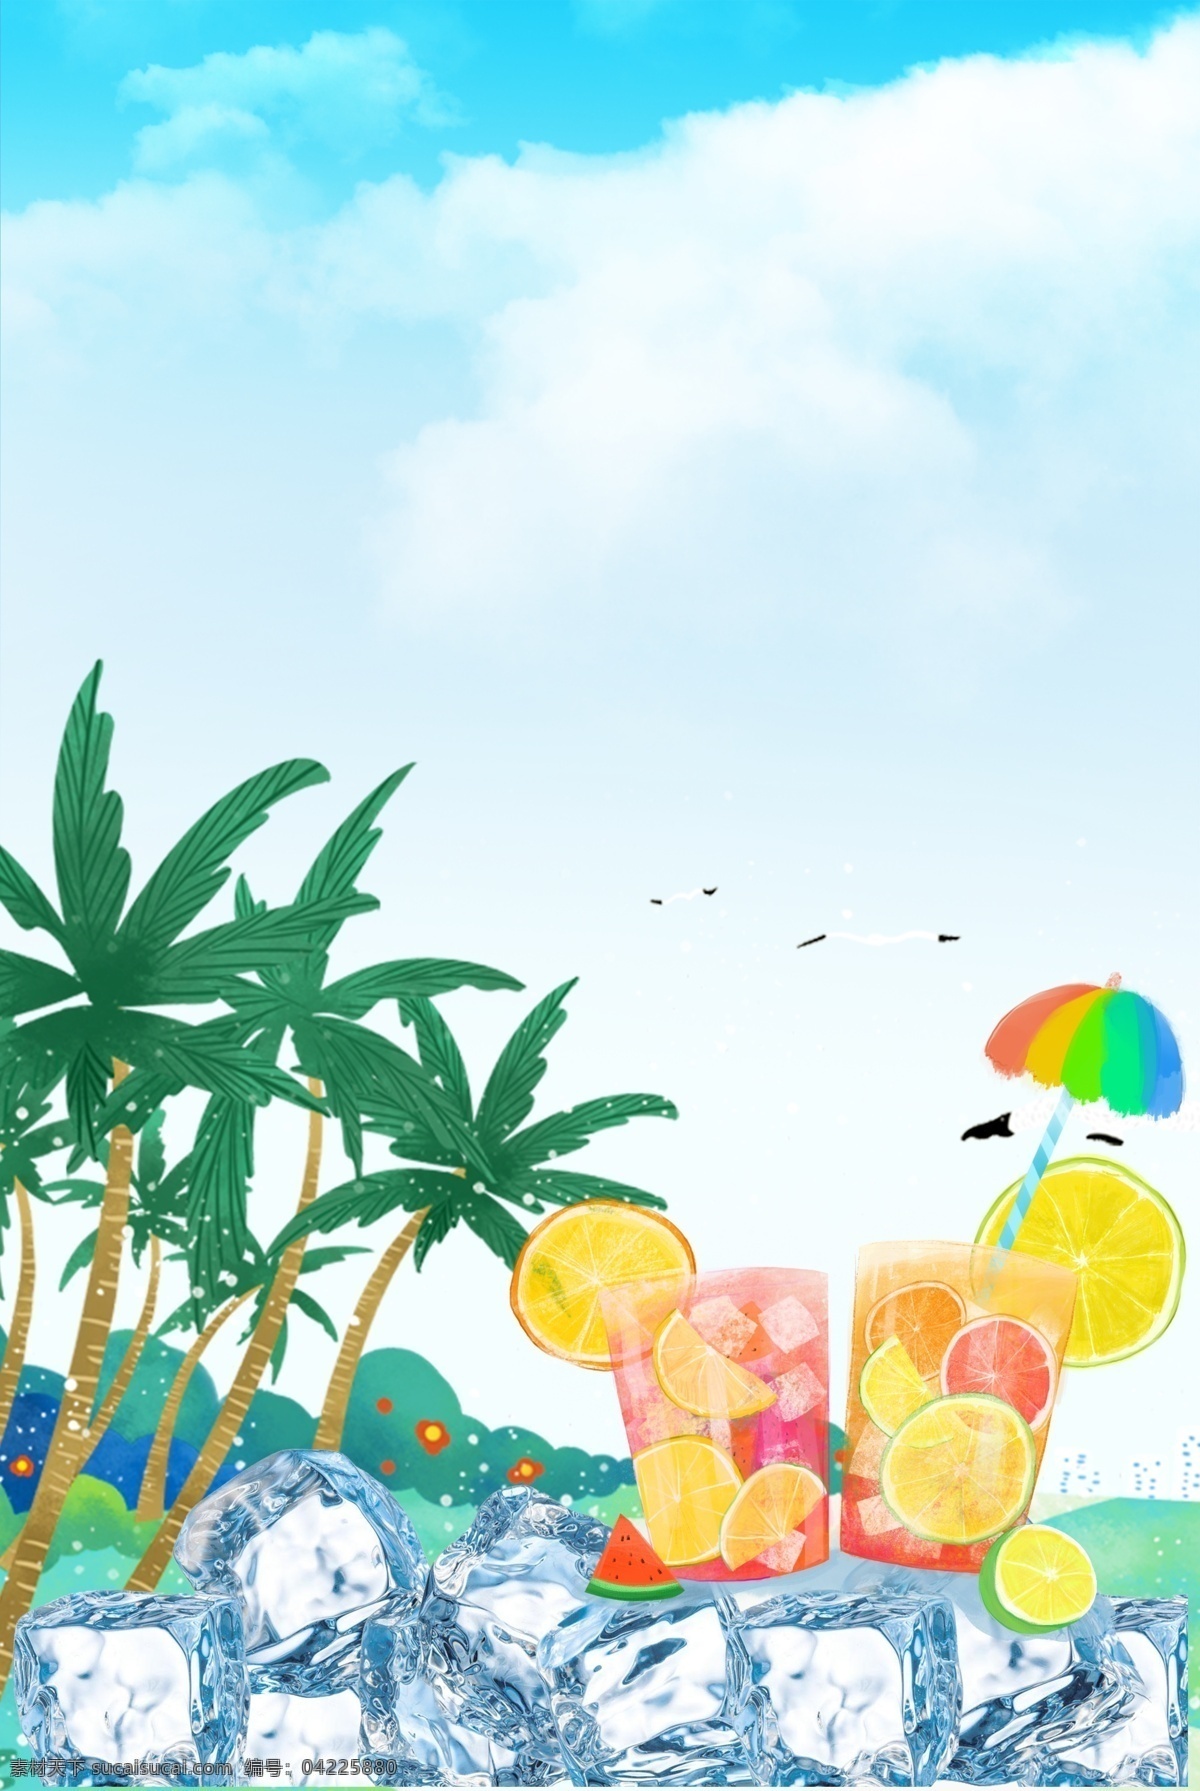 夏日 冰 饮 海报 背景 夏天 夏季 饮料 咖啡 奶茶 果汁 冰块 海边 旅游 大海 椰子树